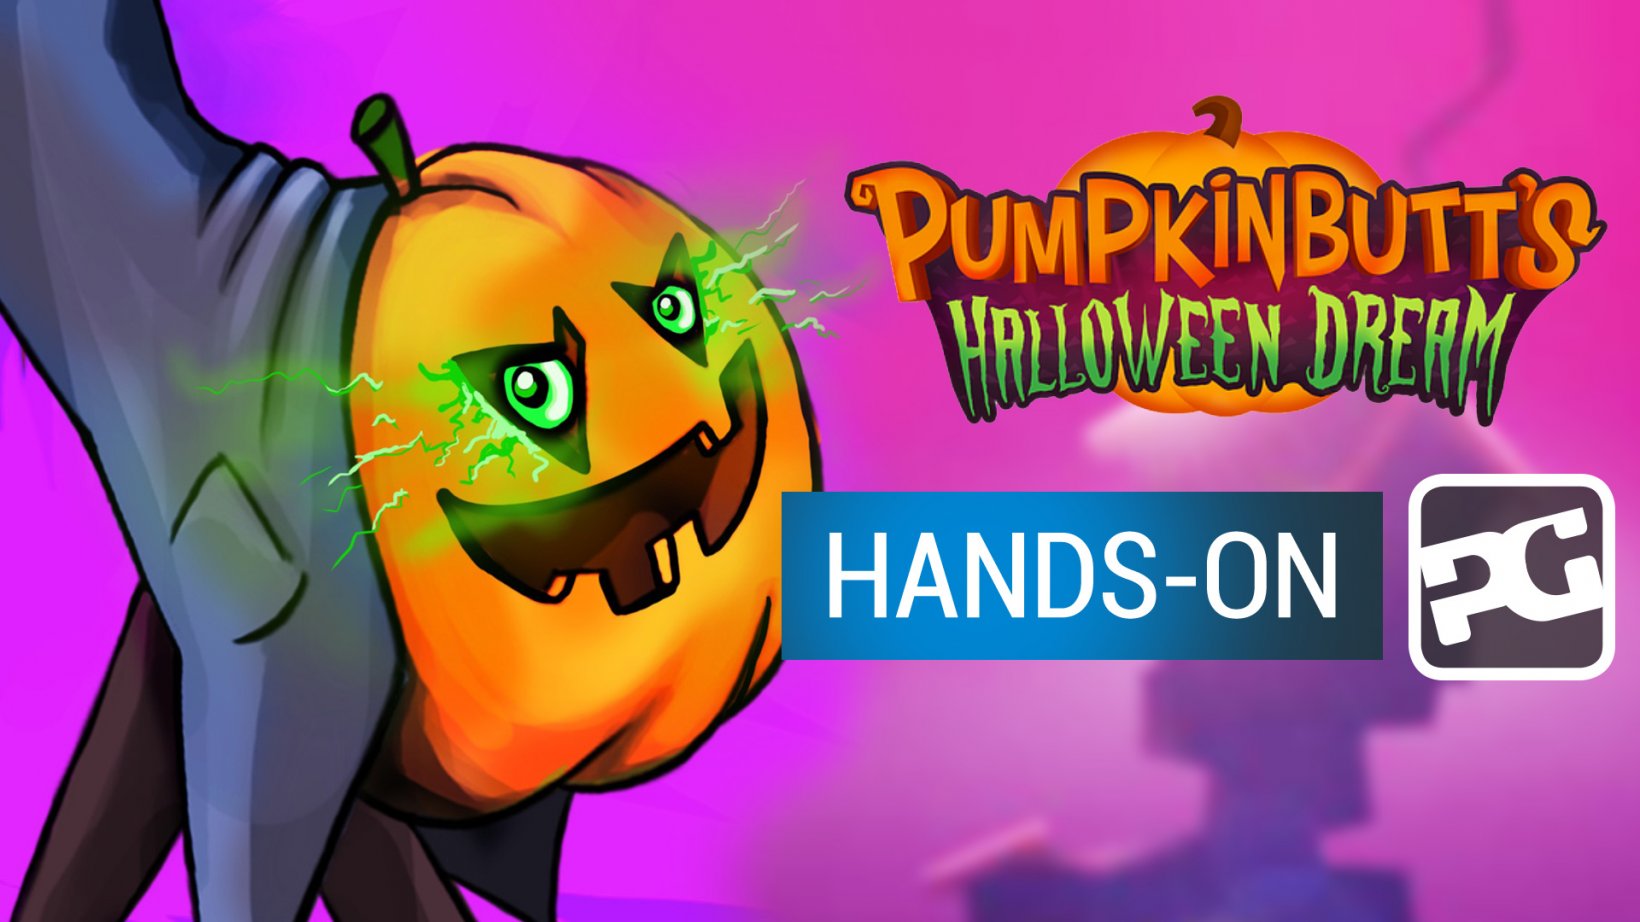 Pumpkinbutt's Halloween Dream gameplay video